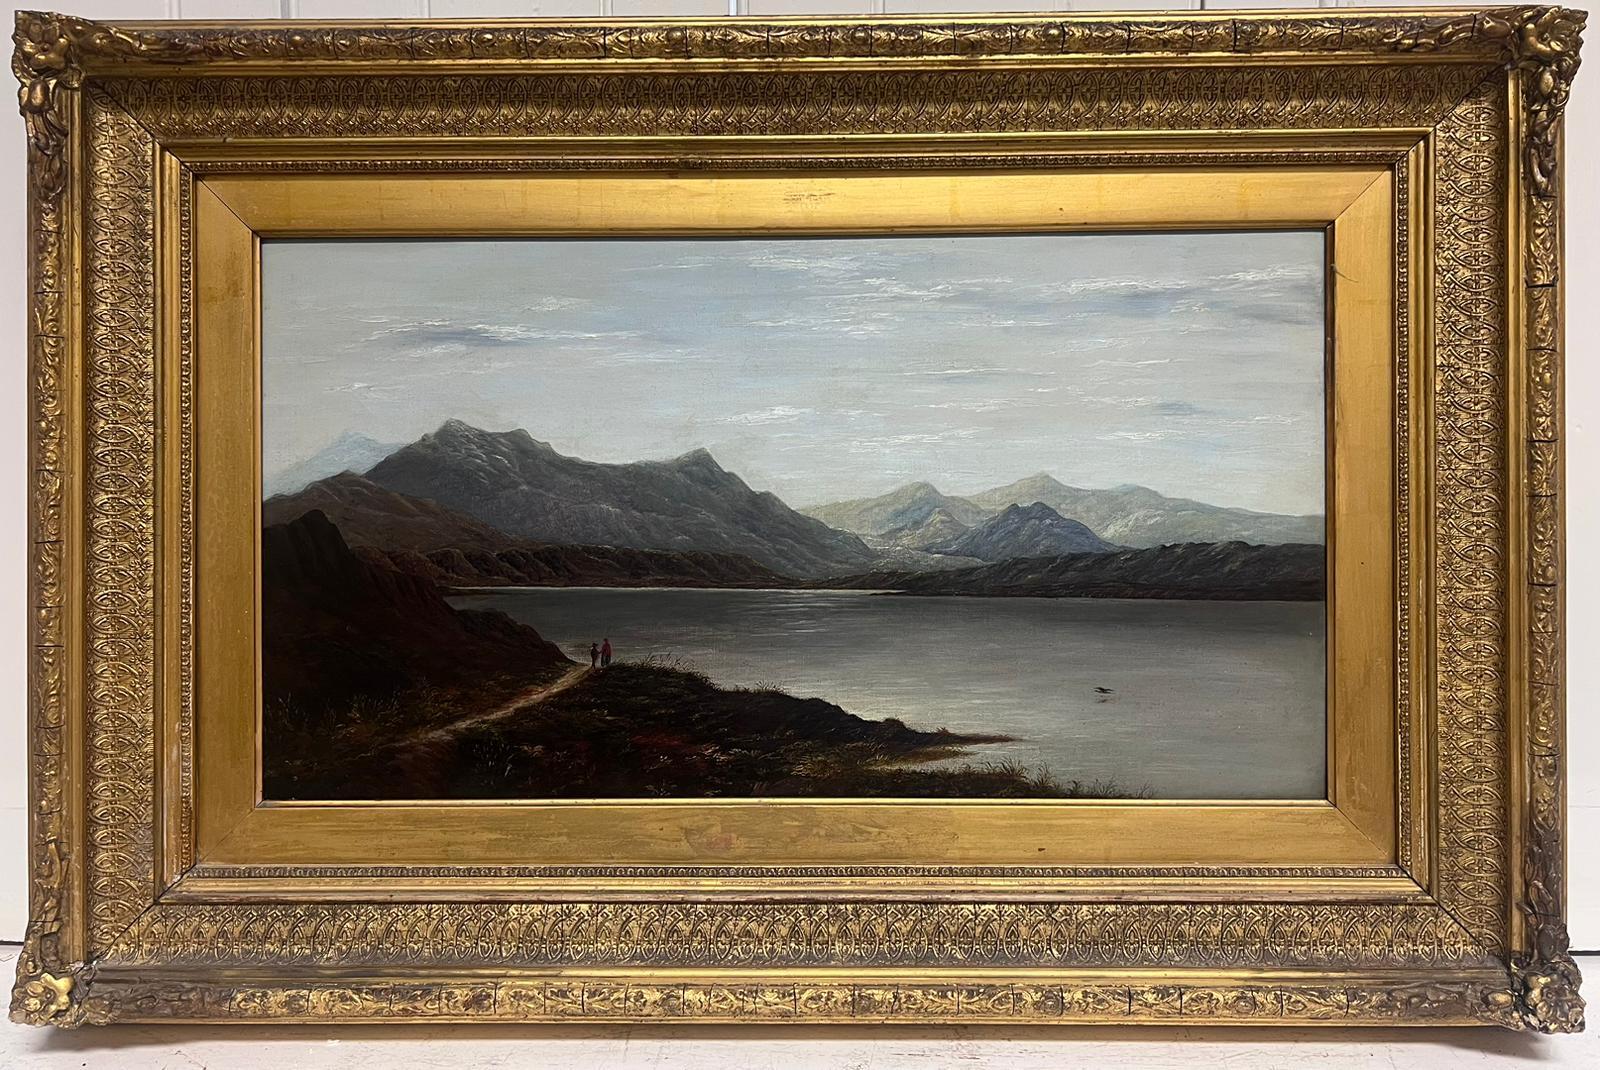 Figurative Painting Charles Leslie - Paysage Panoramic écossais du 19ème siècle représentant une scène de Loch dans un cadre doré